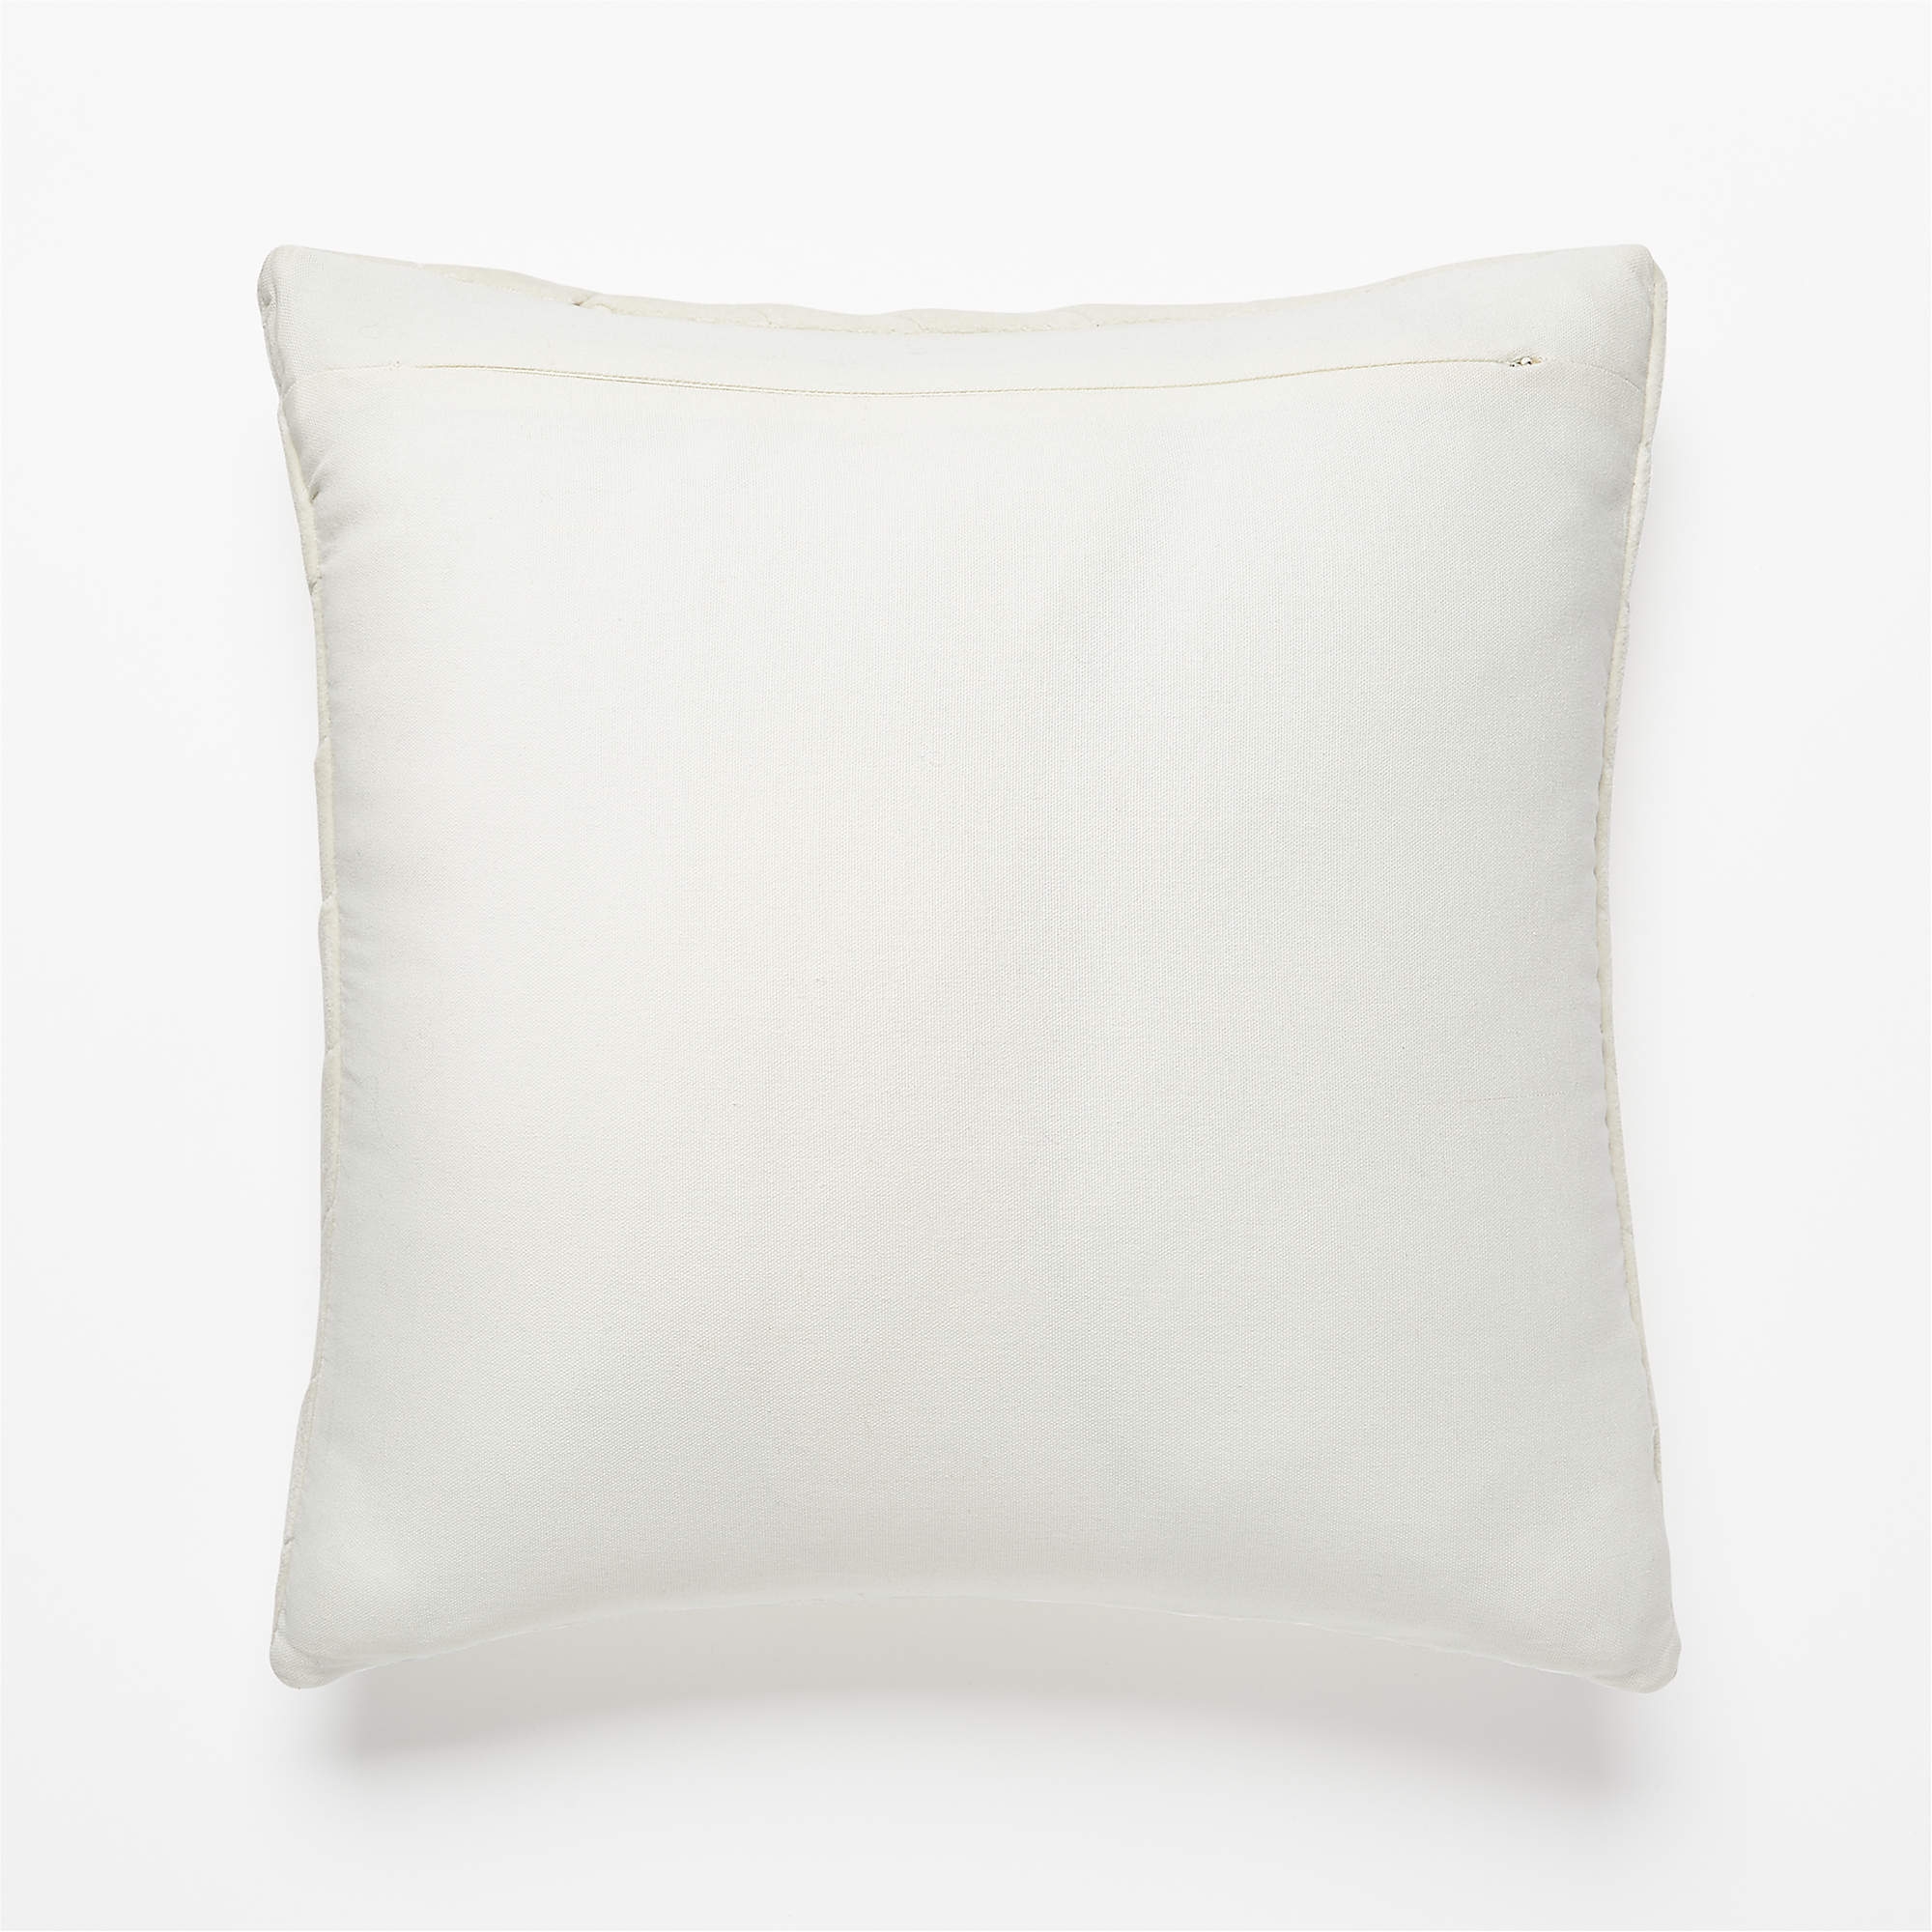 Leger Velvet Pillow, Down-Alternative Insert, Ivory, 18" x 18" - Image 2